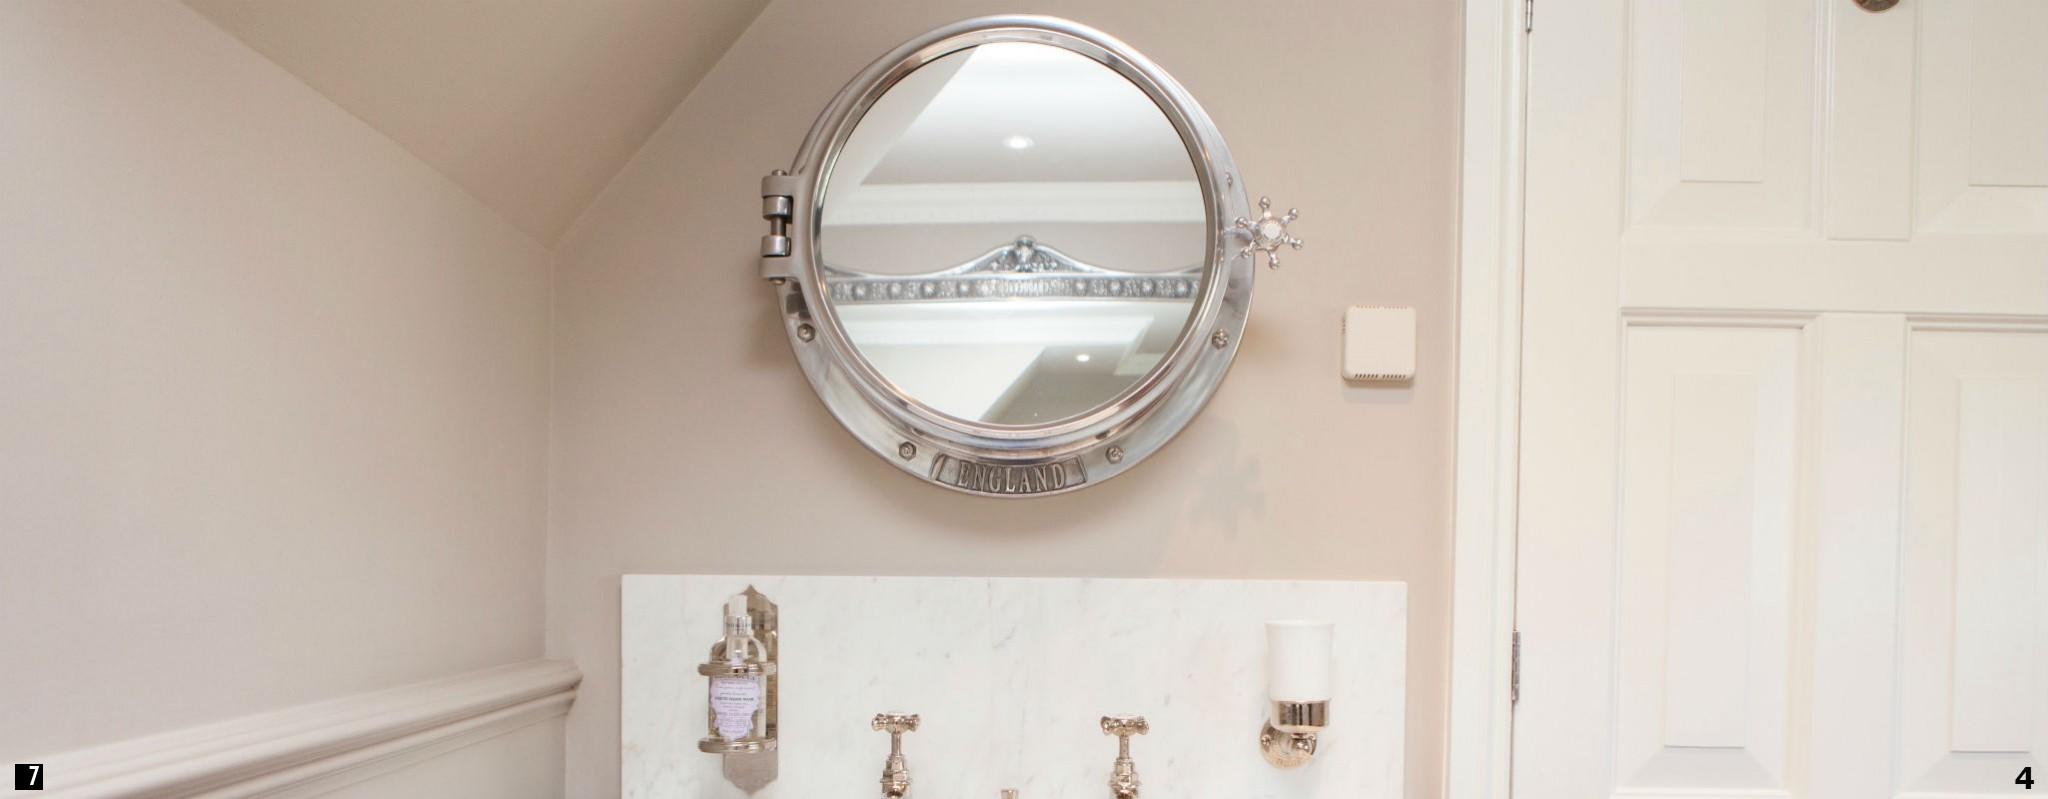 Porthole Mirror Cabinet , Porthole , Porthole Mirror , Porthole Mirror in Bathroom , Bathroom Porthole